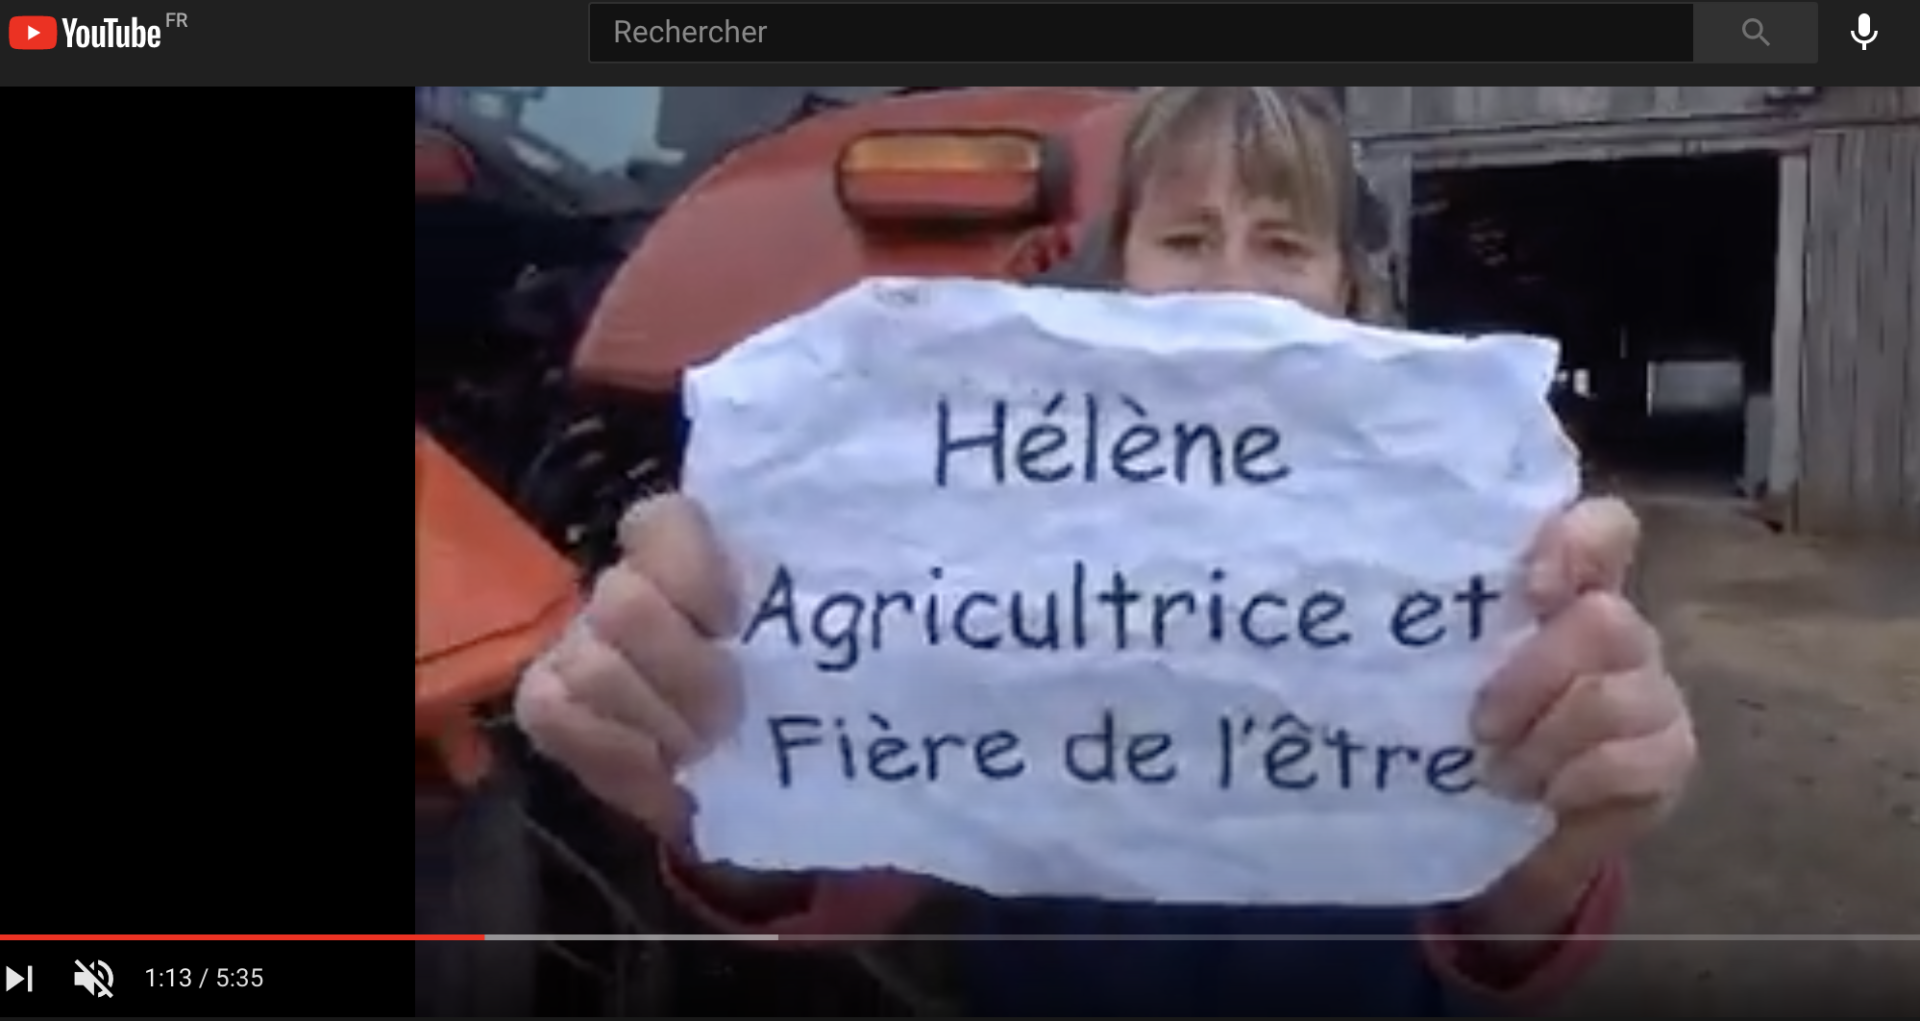 WEB : Découvrez vite la vidéo des agricultrices !